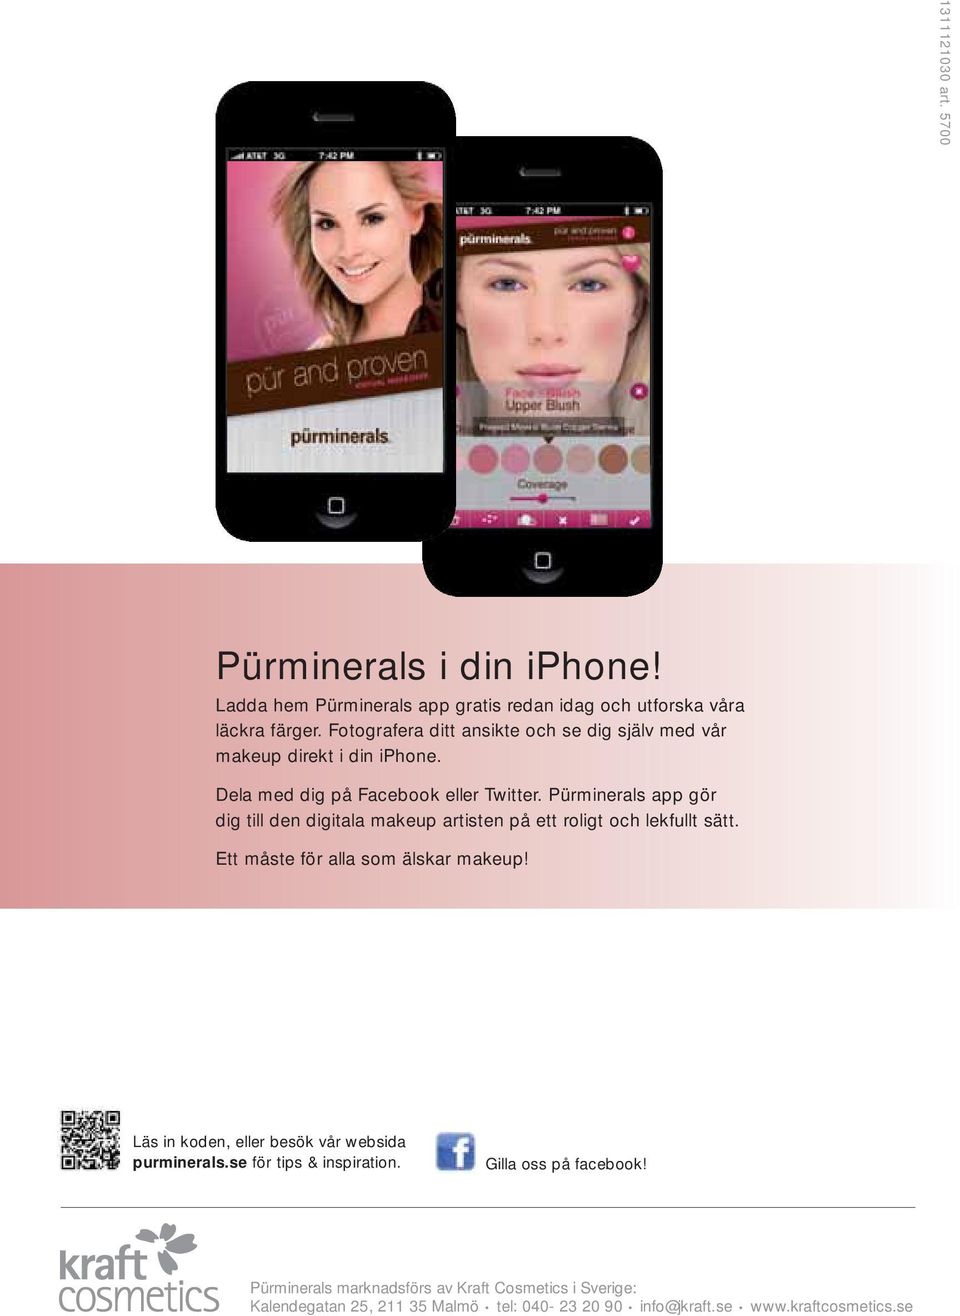 Pürminerals app gör dig till den digitala makeup artisten på ett roligt och lekfullt sätt. Ett måste för alla som älskar makeup!